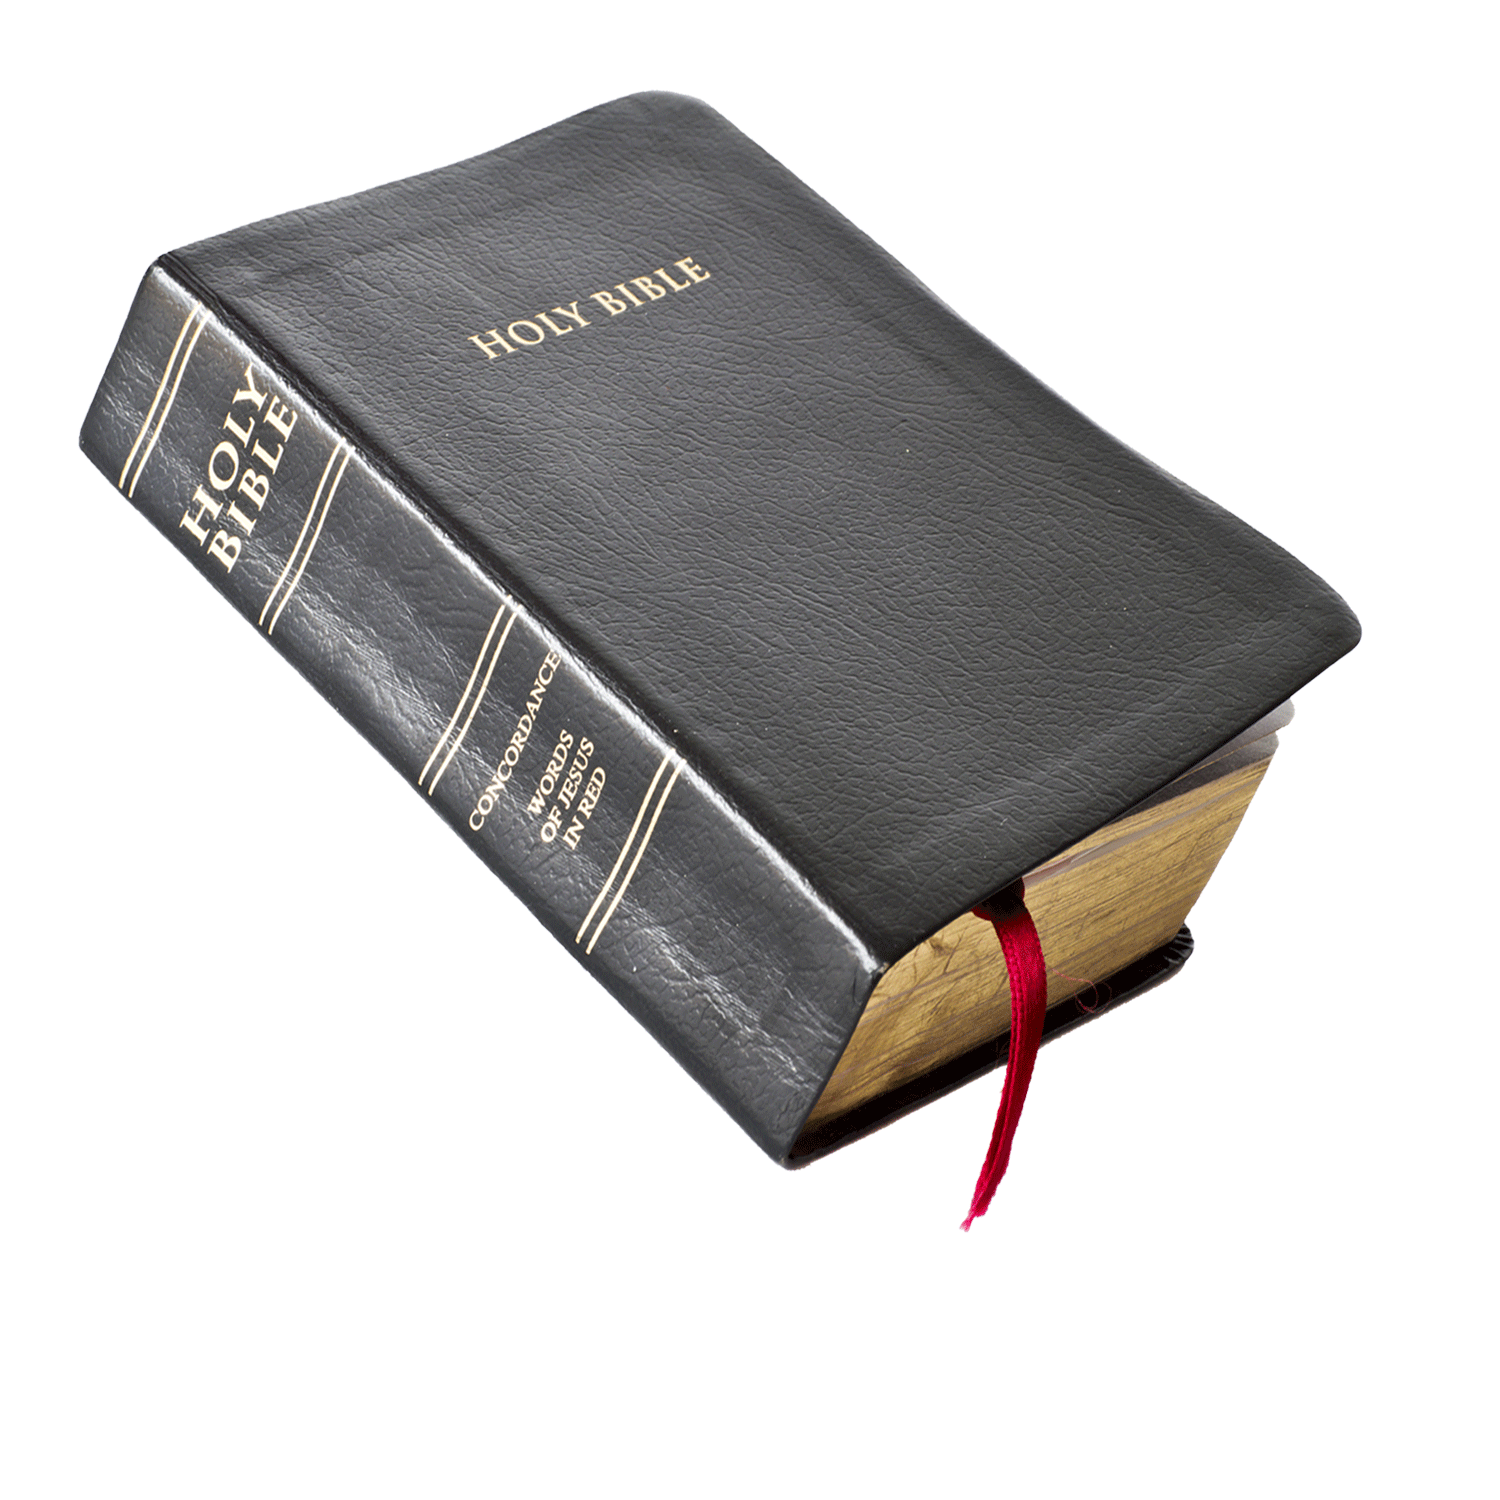 readthebiblem read the bible bible seminars #18019